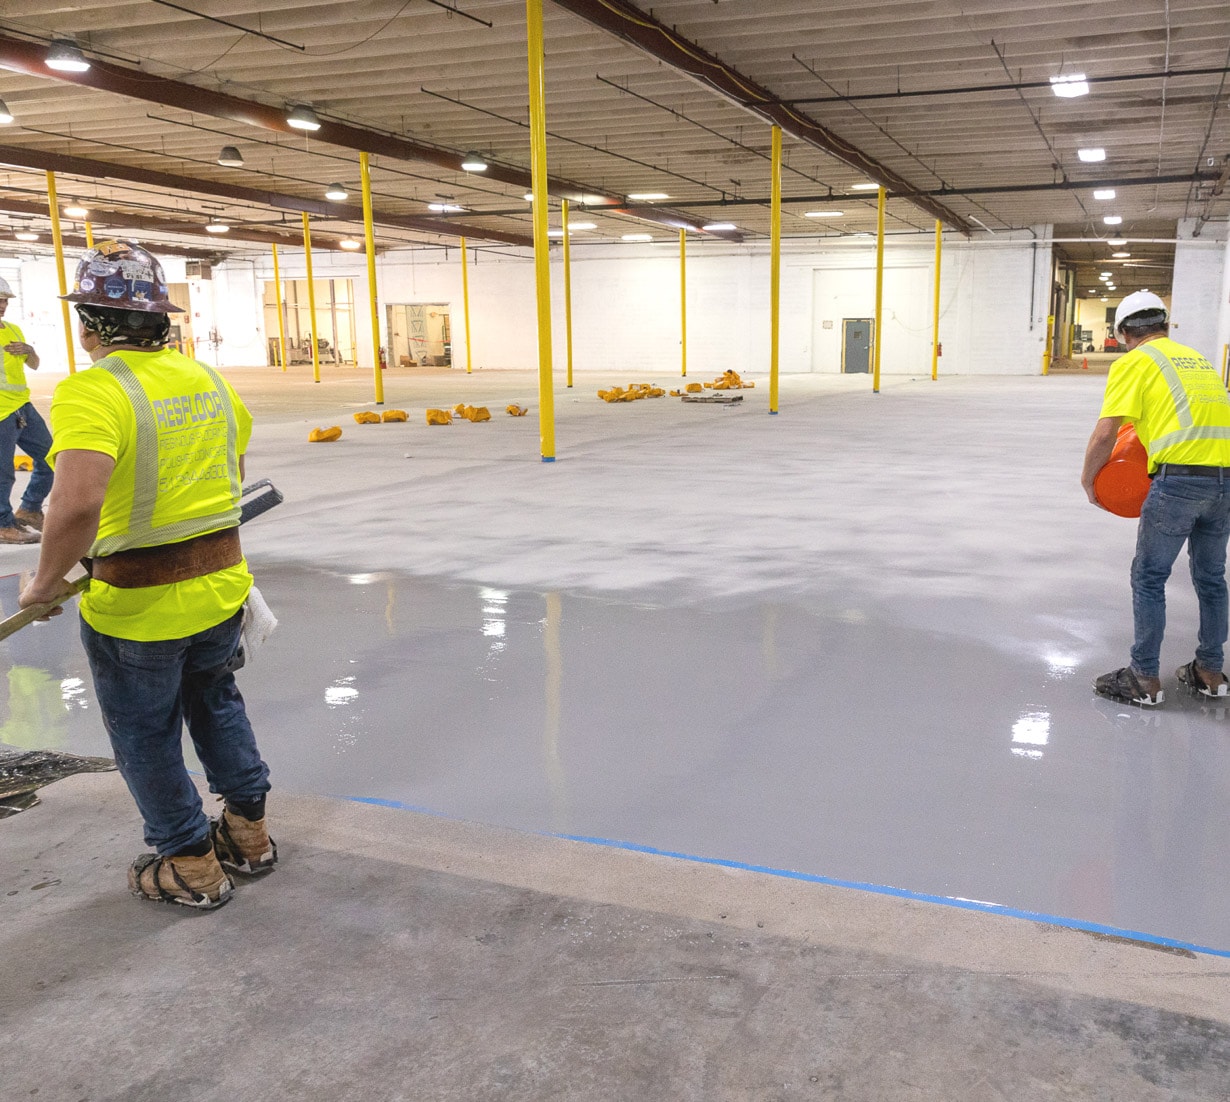 Epoxy resinous flooring installation in warehouse